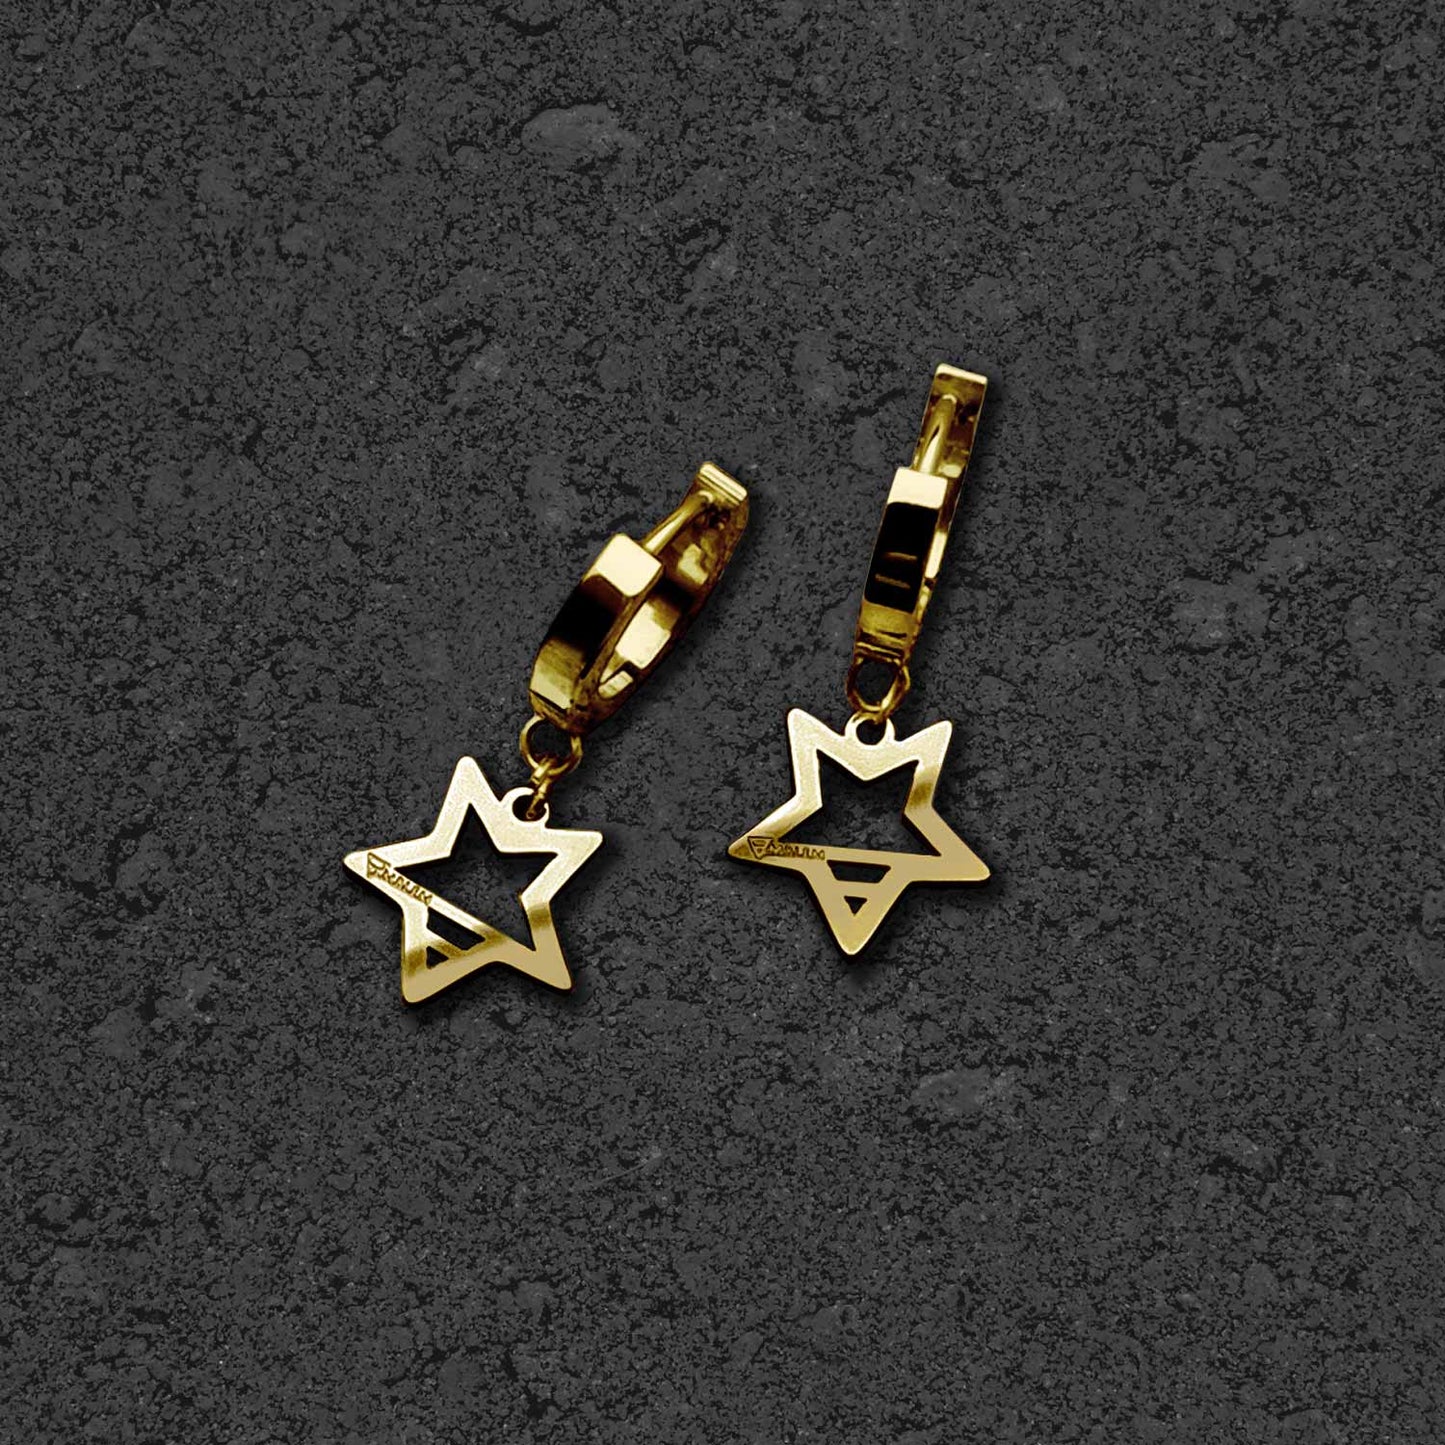 STAR EARRINGS - GOLD